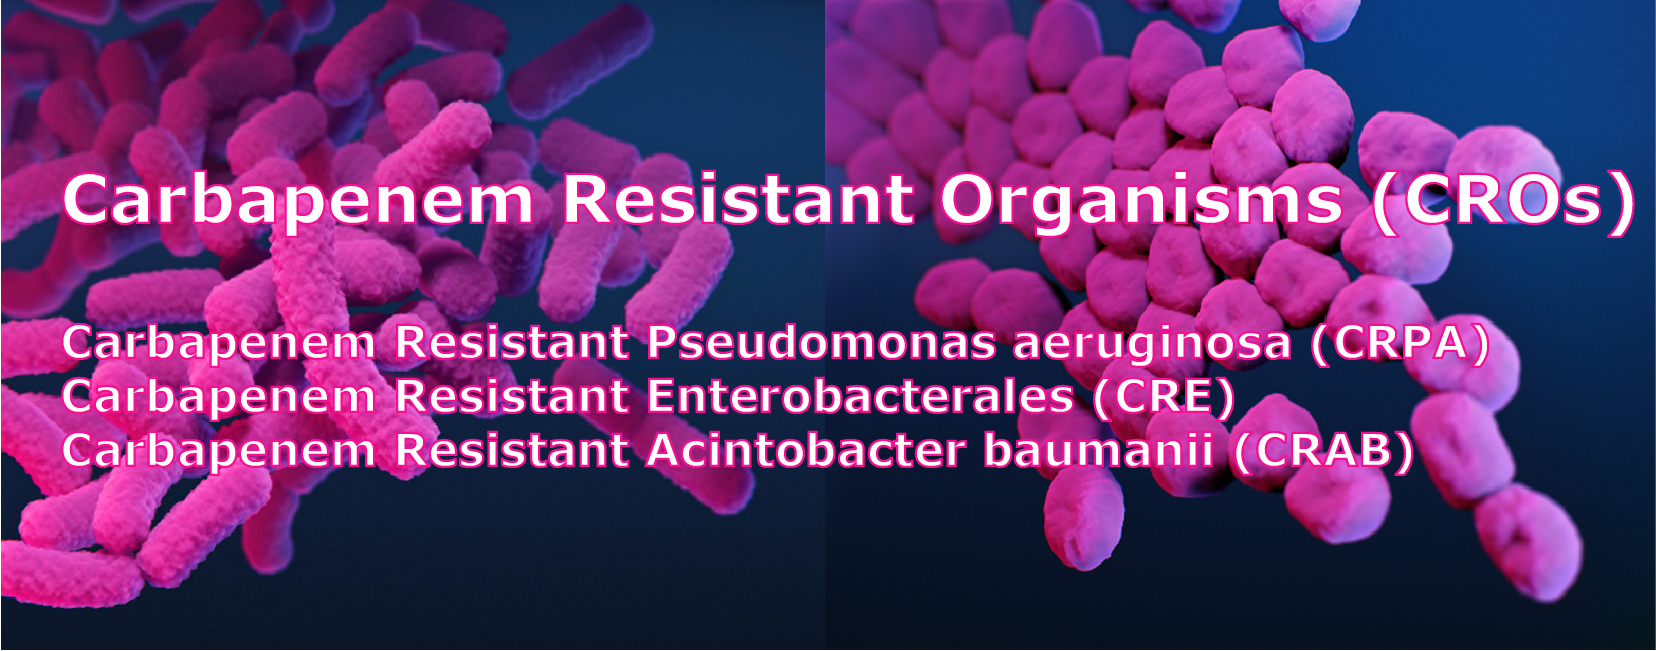 "Carbapenem Resistant Organisms (CROs) Carbapenem Resistant Pseudomonas aeruginosa (CRPA) Carbapenem Resistant Enterobacterales (CRE) Carbapenem Resistant Acintobacter baumanii (CRAB)"